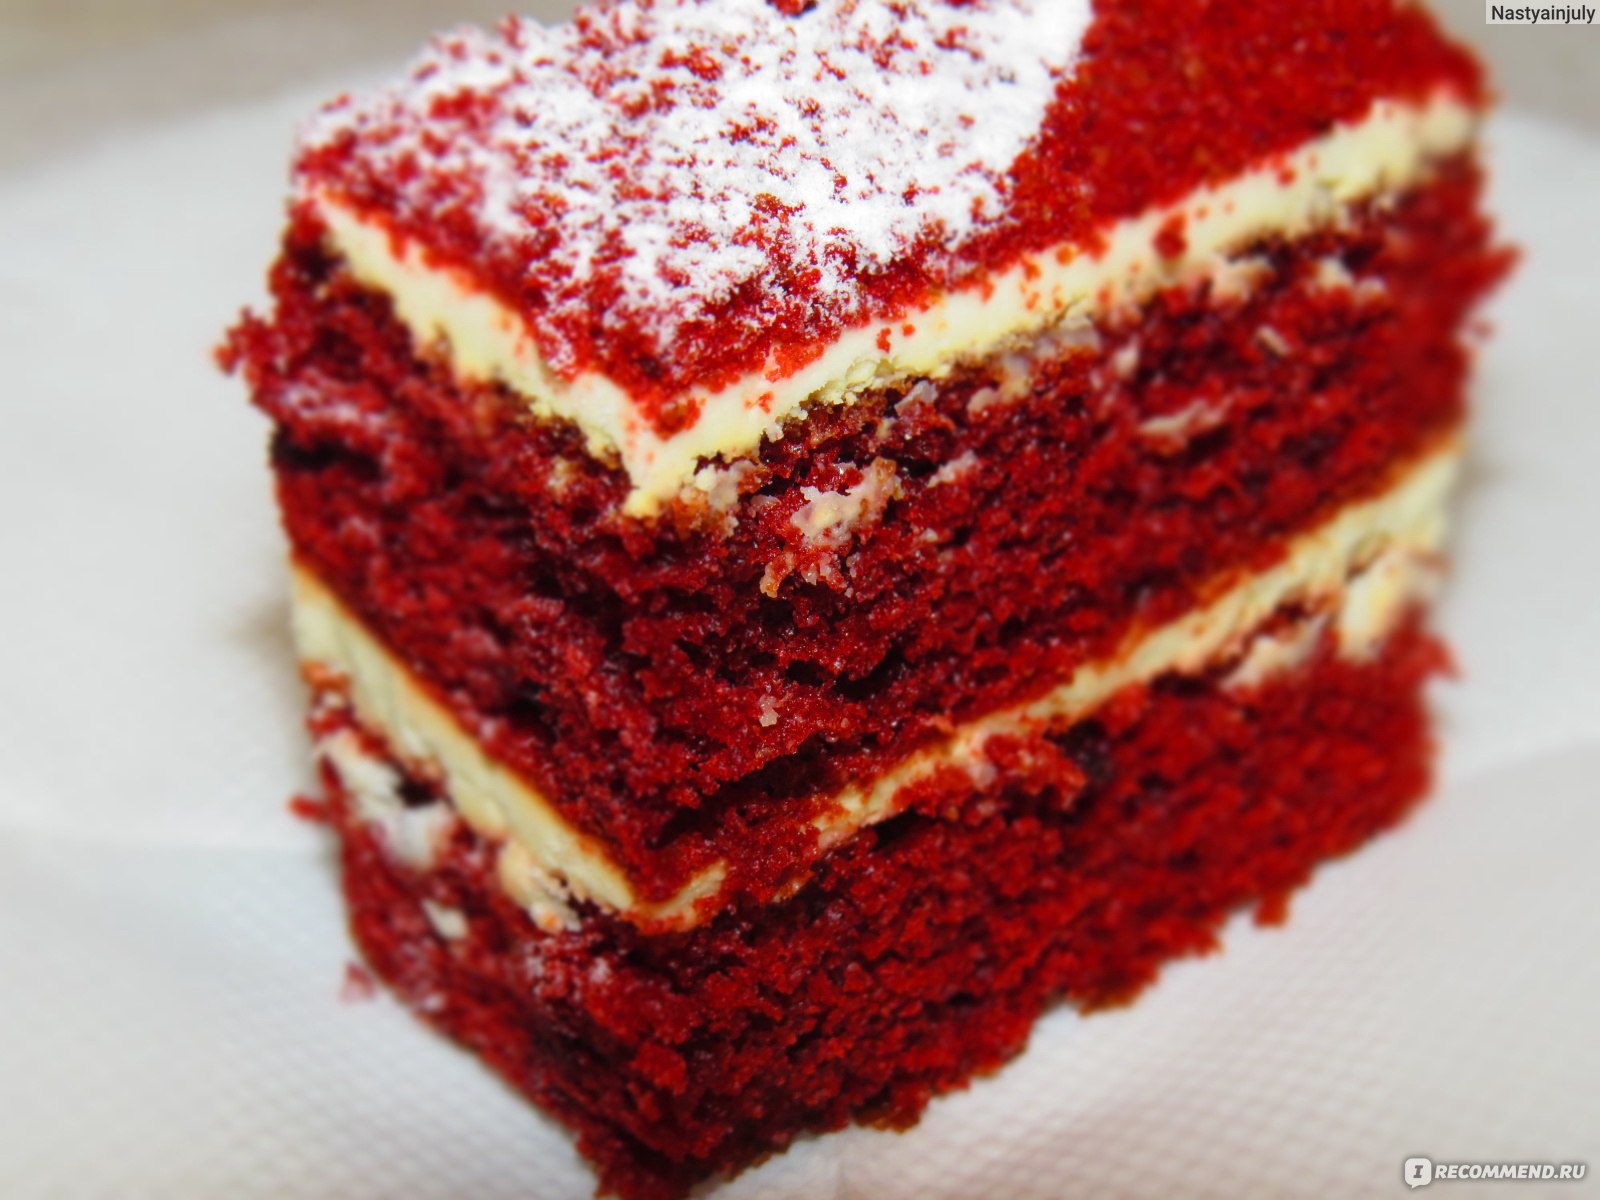 Торт Leberge бисквитный красный бархат со сливочным кремом